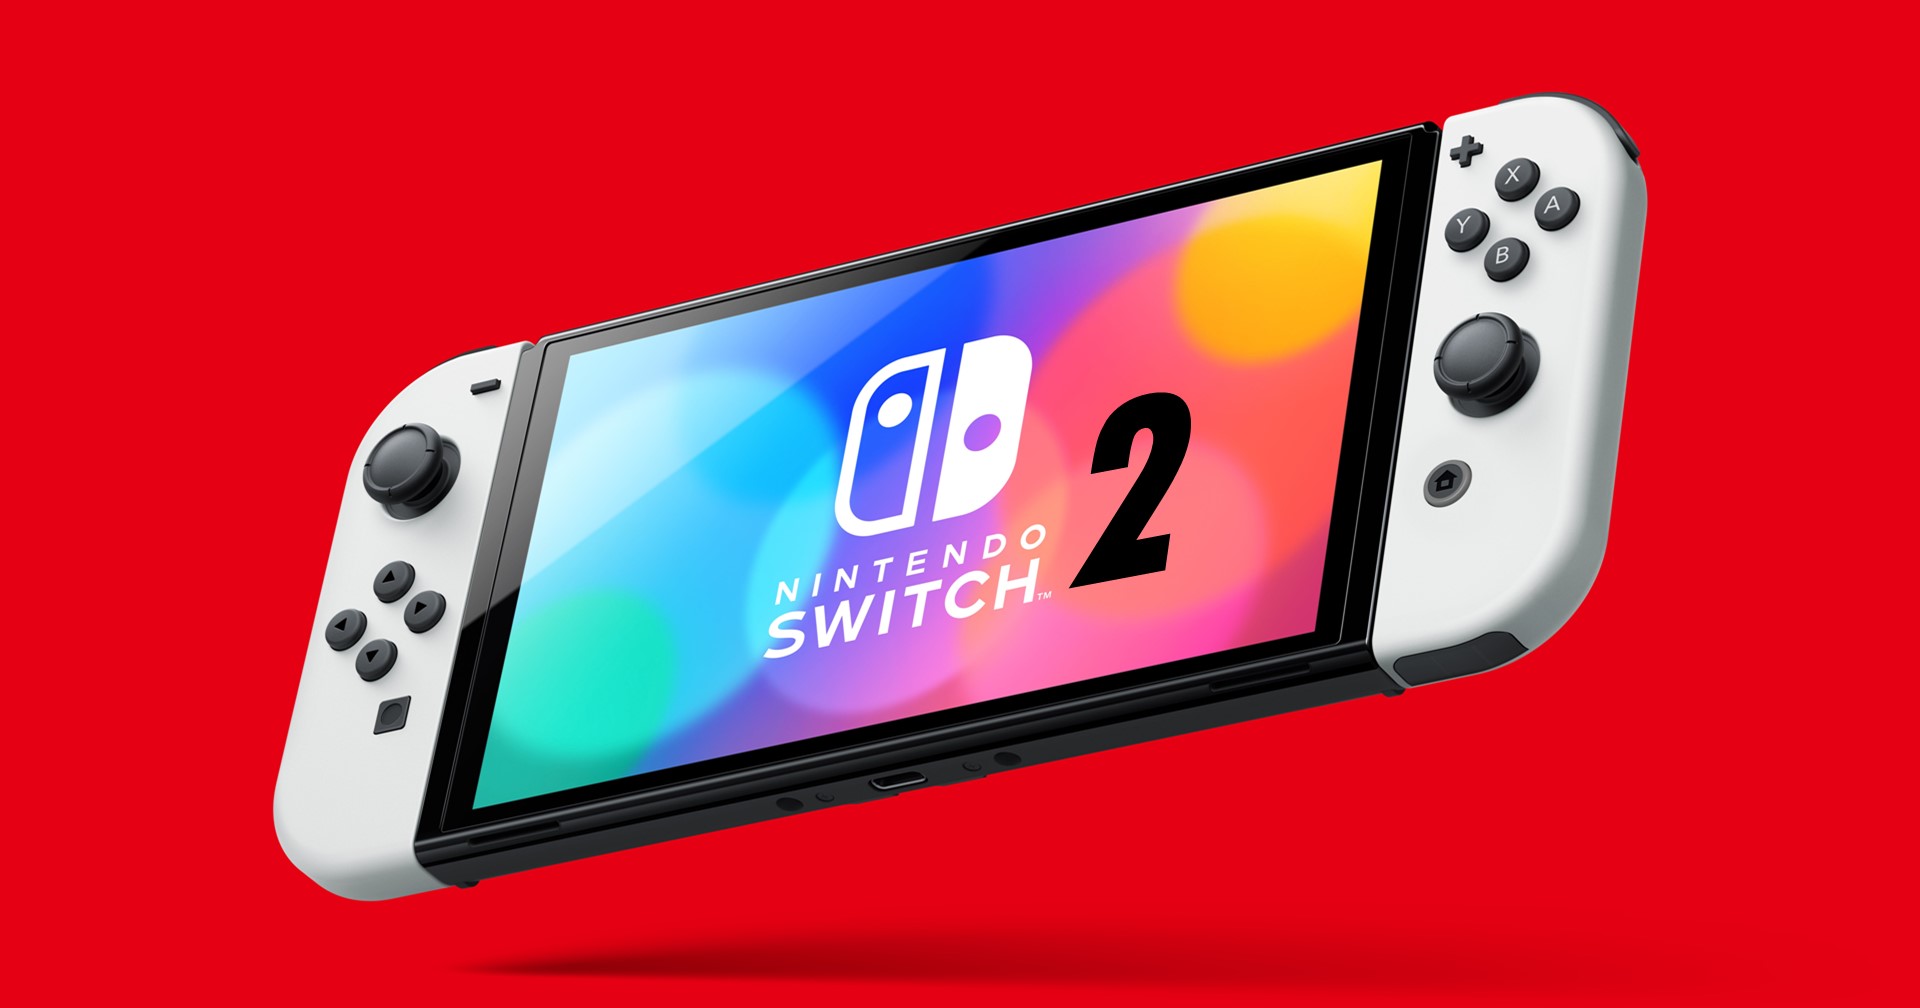 [ข่าวลือ] หลุดสเปก Nintendo Switch รุ่นใหม่ ใช้ชิป Nvidia Tegra T239 ที่เล่นเกมจากรุ่นเดิมได้